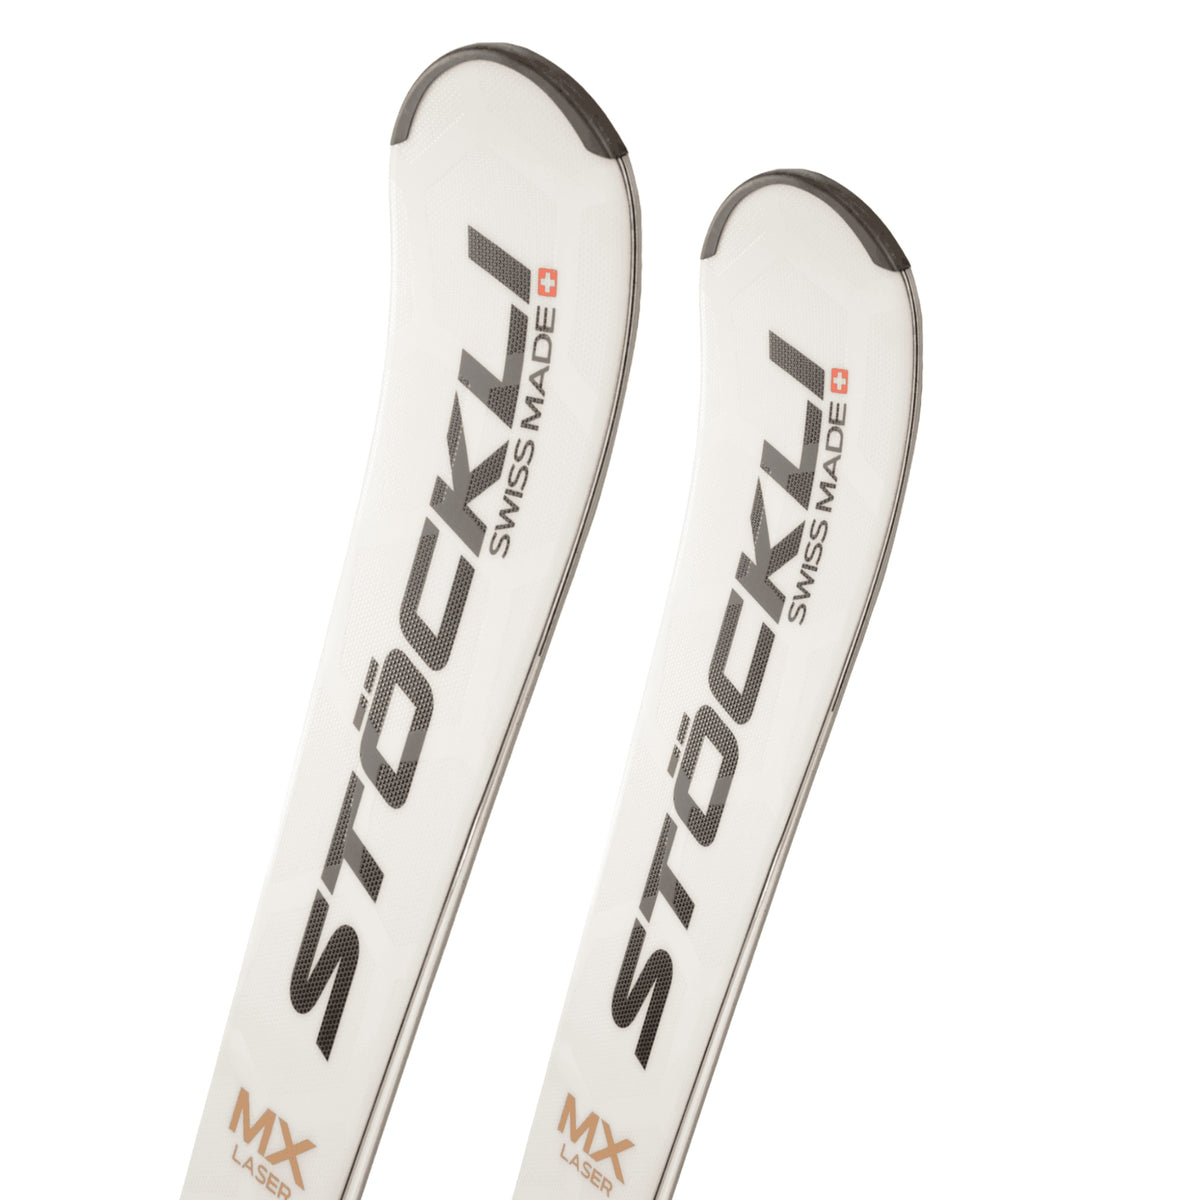 Skis Alpins Laser MX MC D20 + MC11 Femme